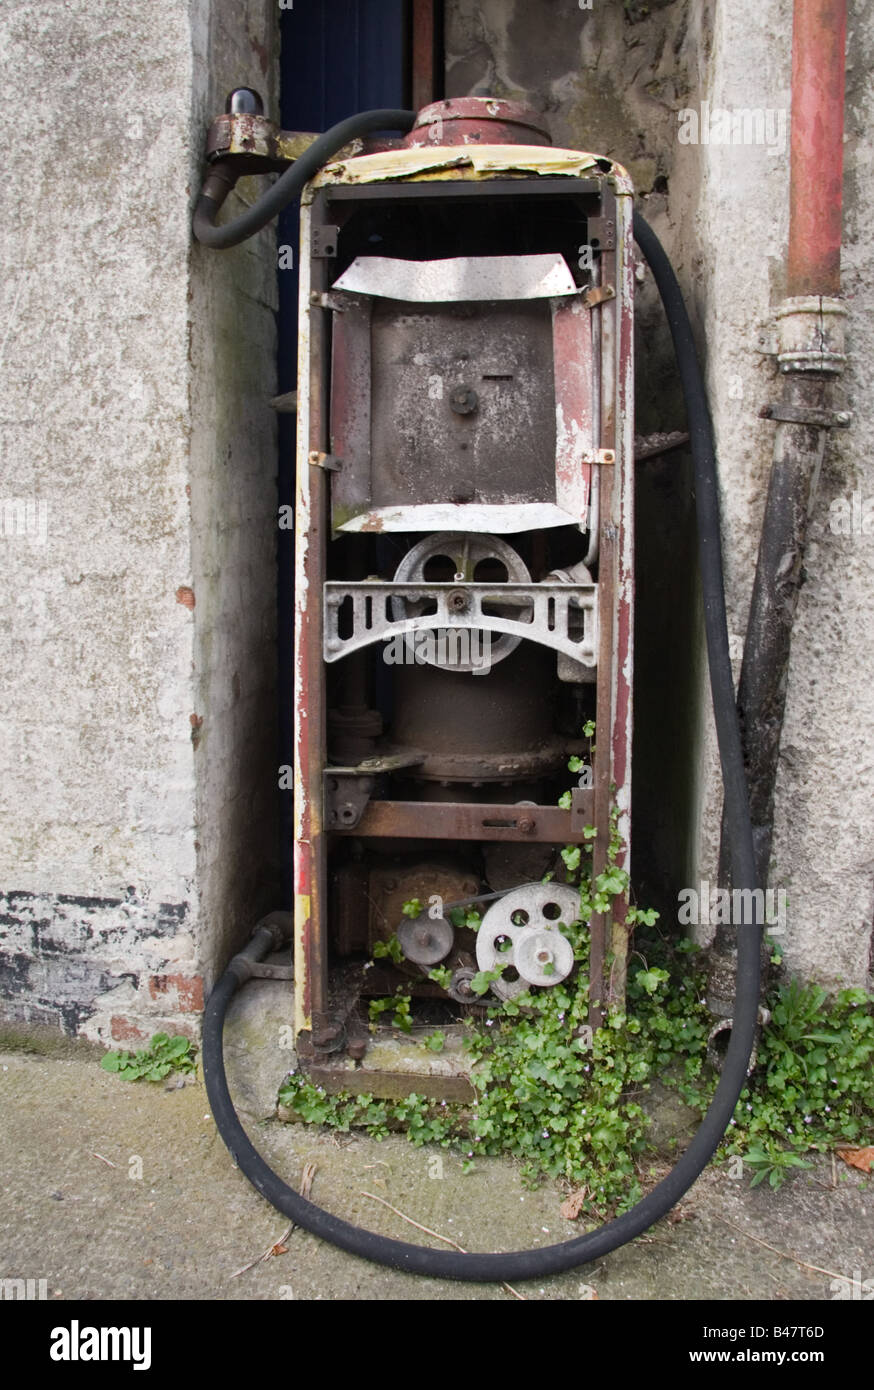 Une vieille pompe à essence en état avancé de désintégration, Carmarthen Carmarthen, pays de Galles, Royaume-Uni Banque D'Images